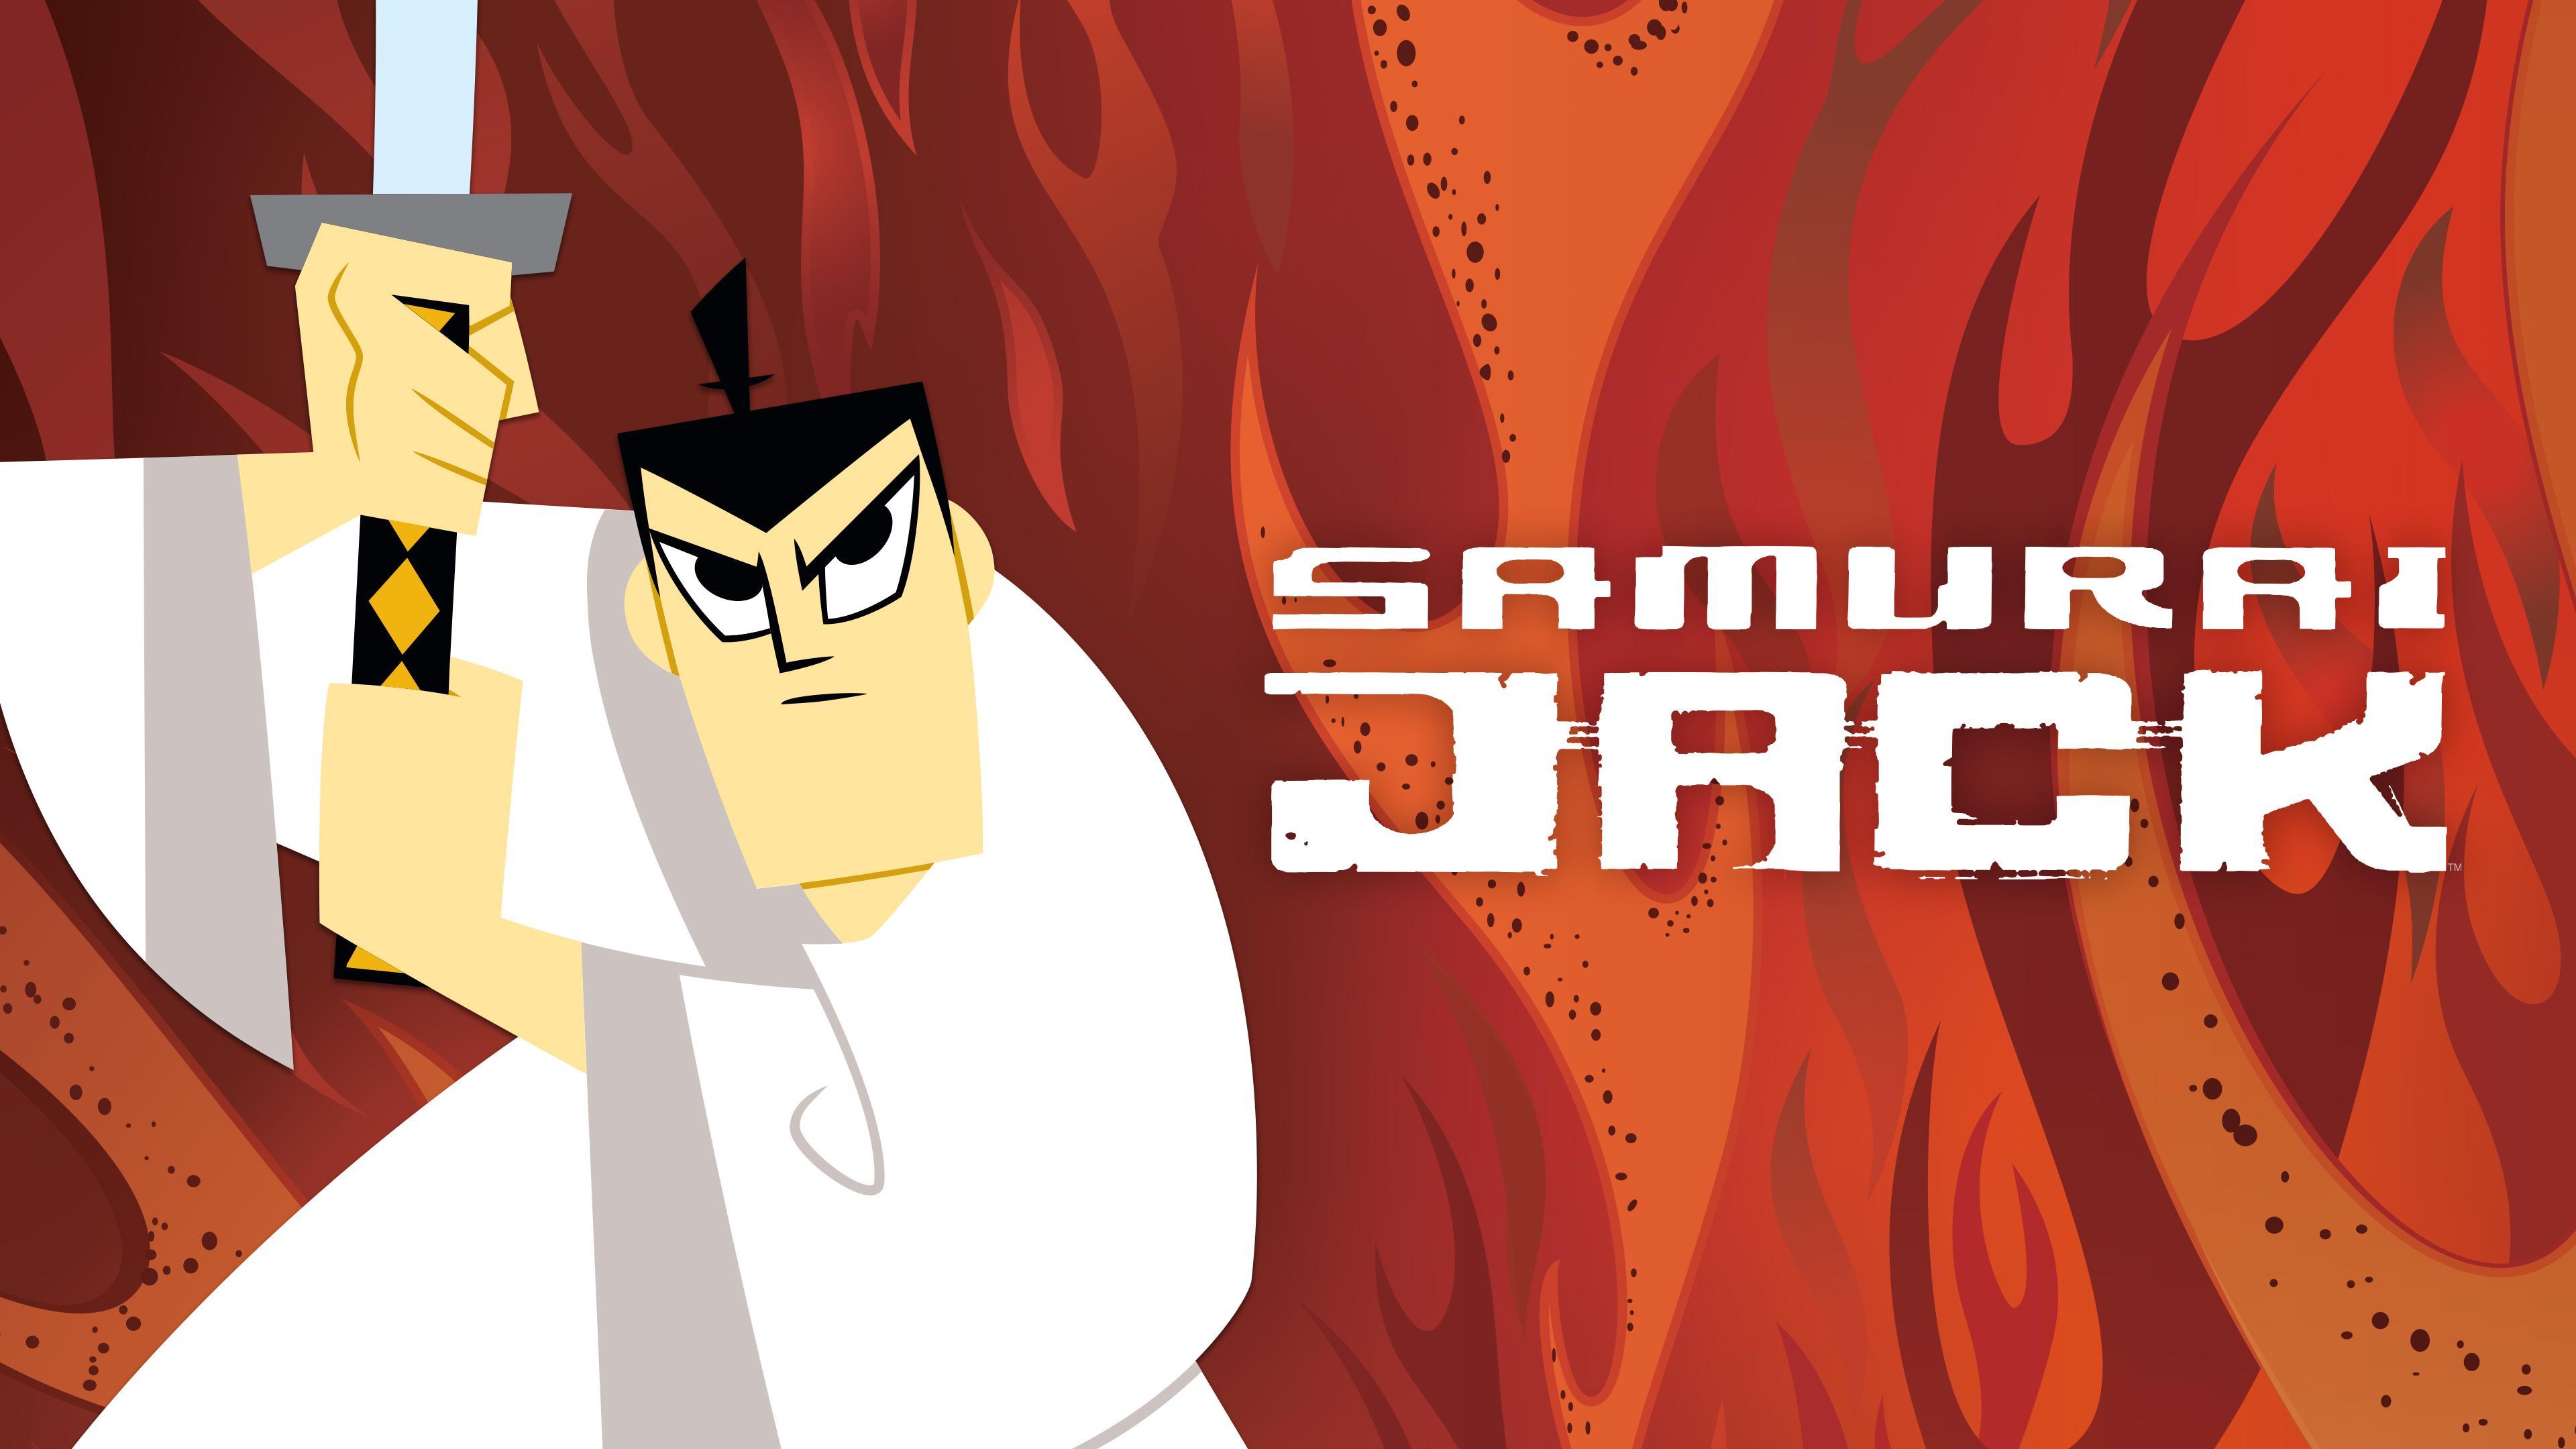 Samurai Jack Season 2 - watch full episodes streaming online